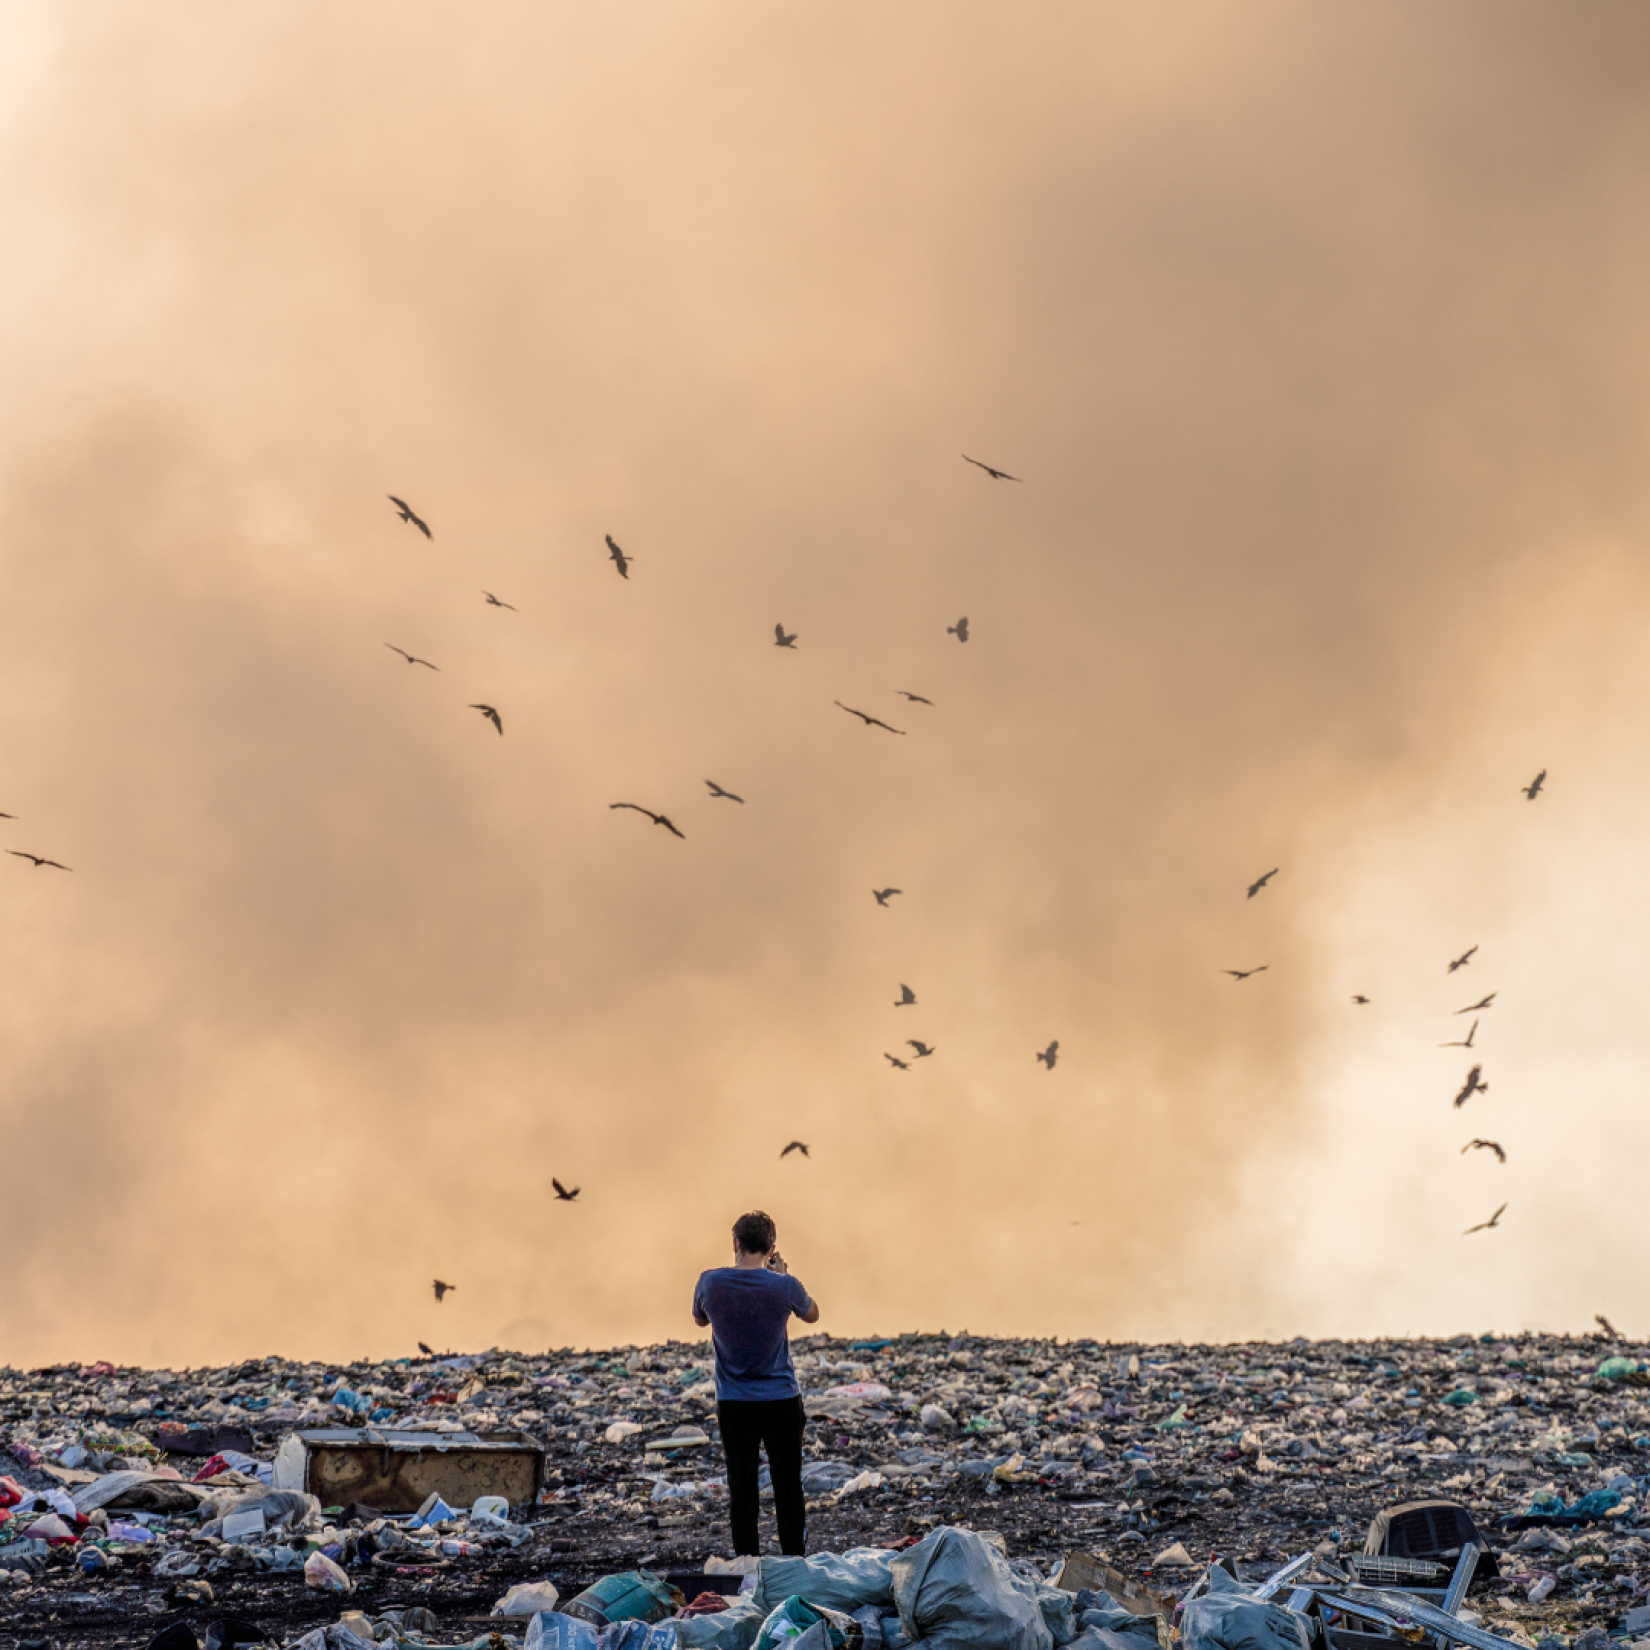 m 2020, o custo direto global da gestão de resíduos foi estimado em US$ 252 bilhões. No entanto, quando se consideram os custos ocultos da poluição, da saúde precária e das alterações climáticas resultantes de más práticas de eliminação de resíduos, o custo sobe para US$361 bilhões.